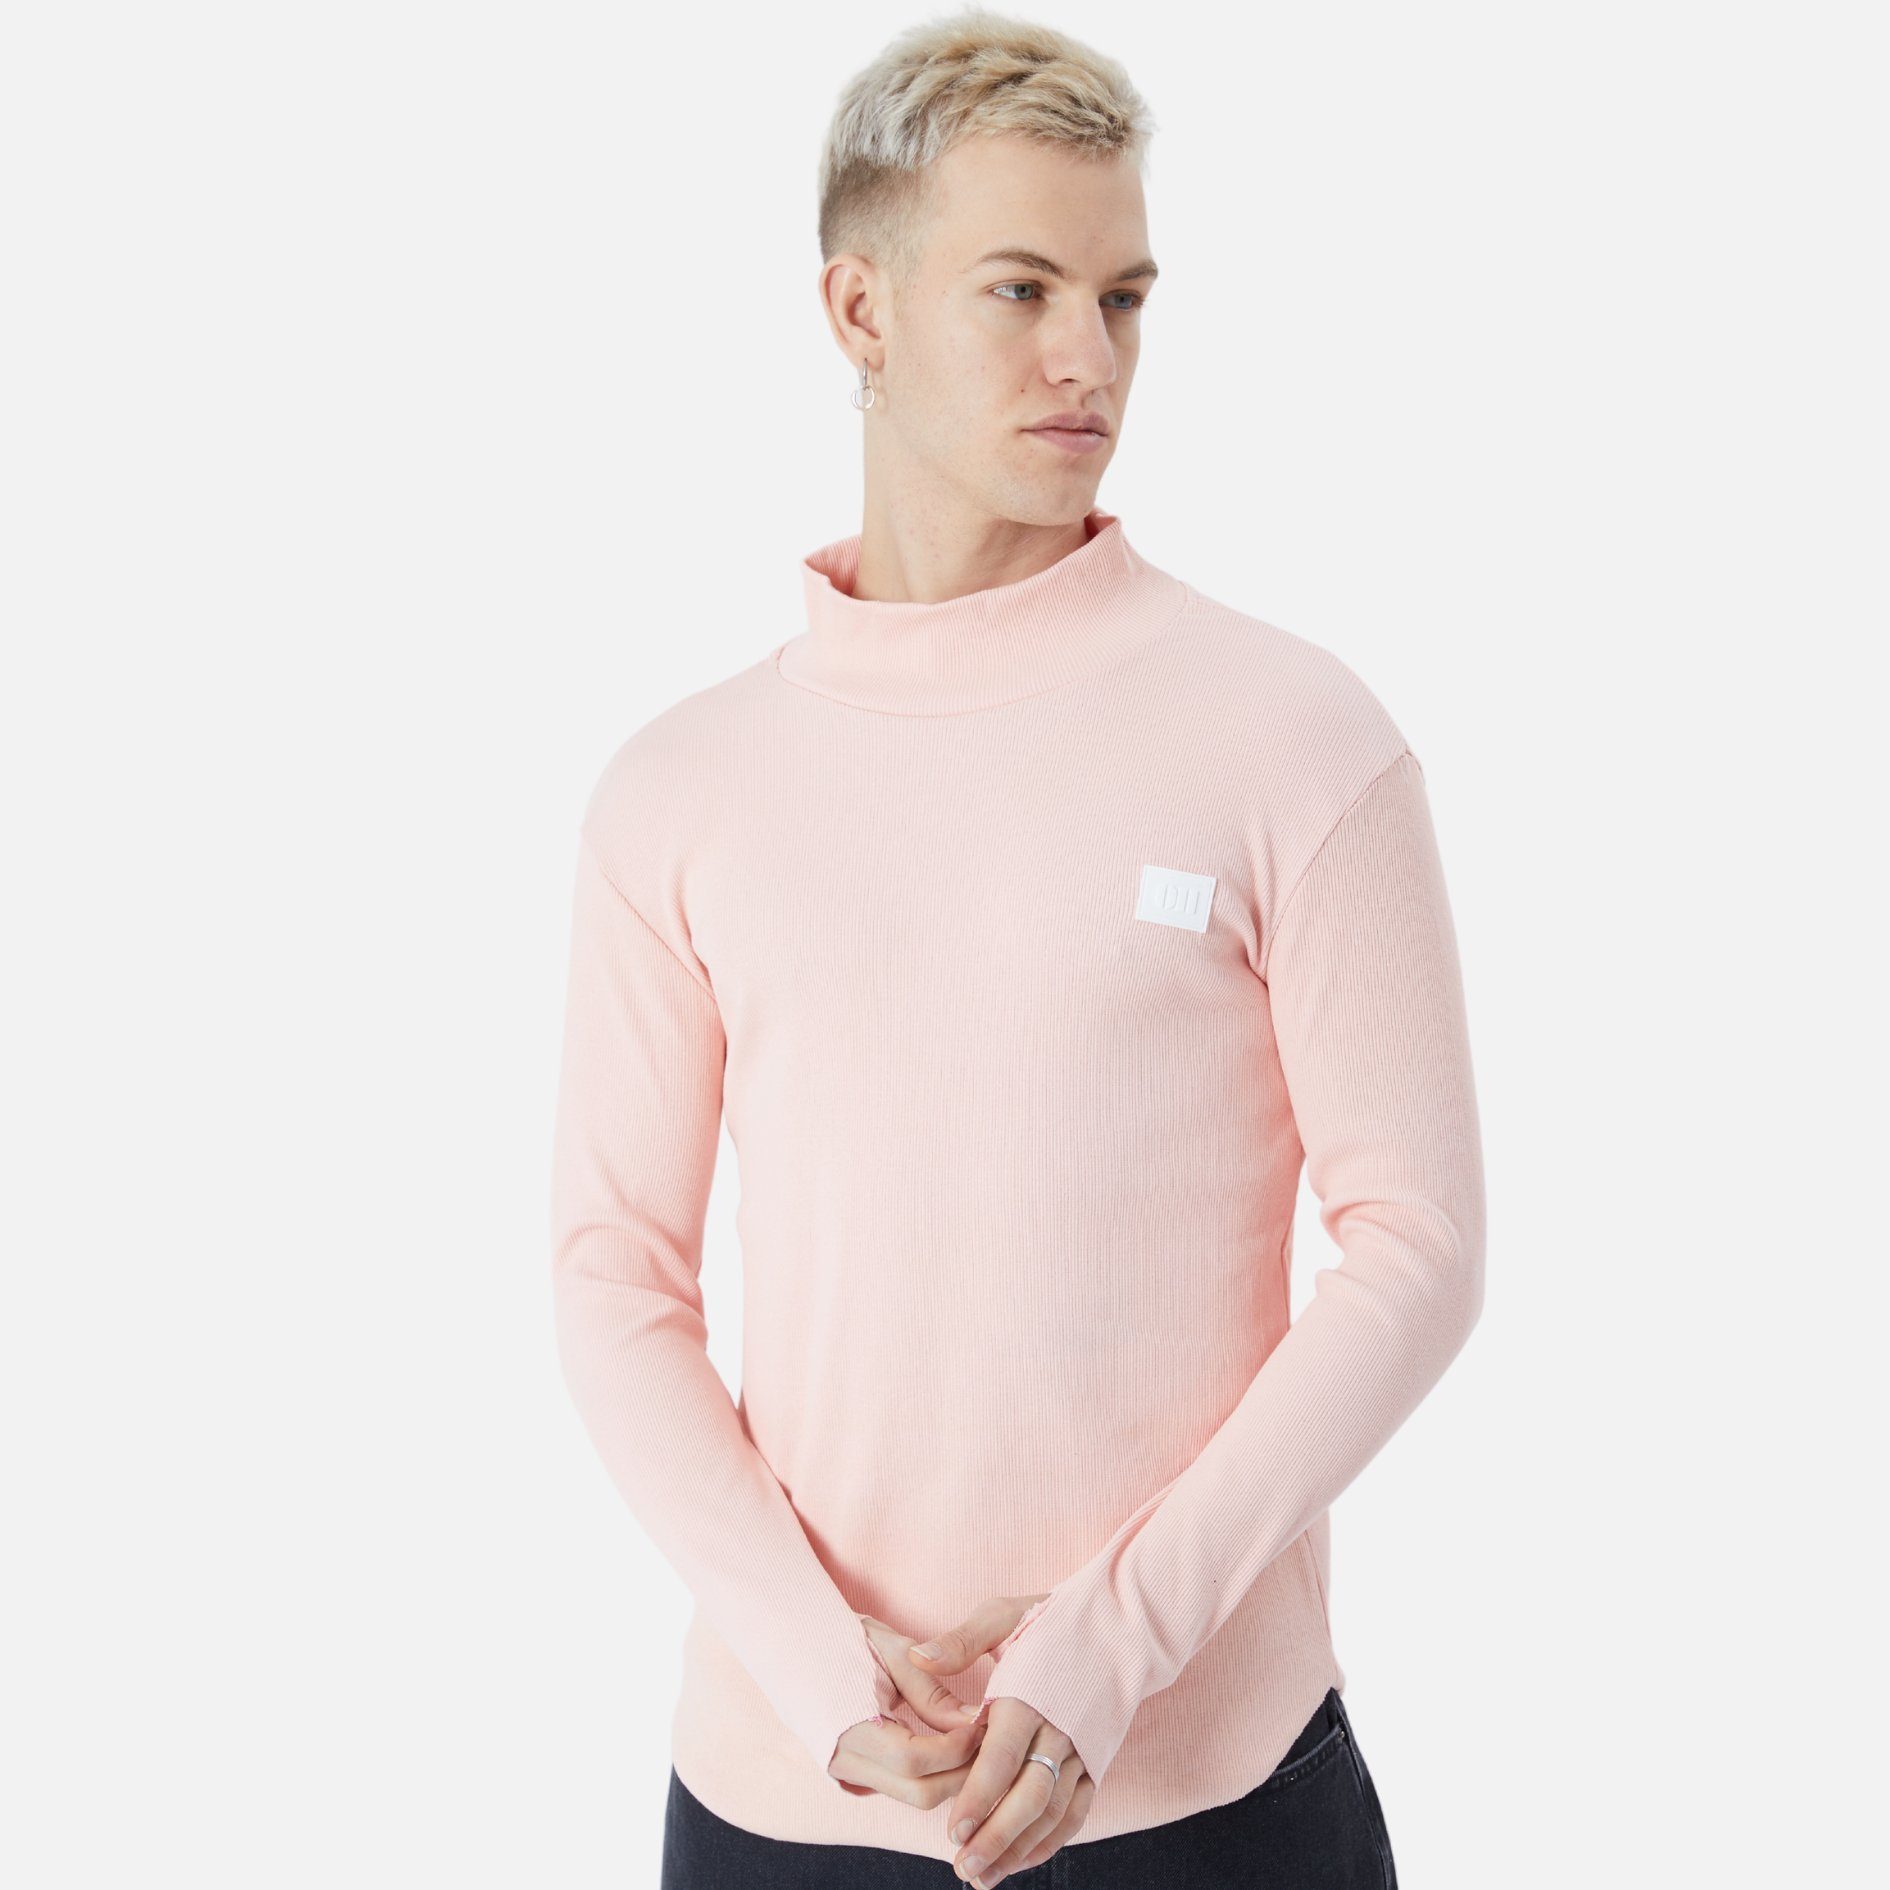 Sweatshirt Rundhals Rosa Sweatshirt COFI Herren Pullover Fit Regular Casuals